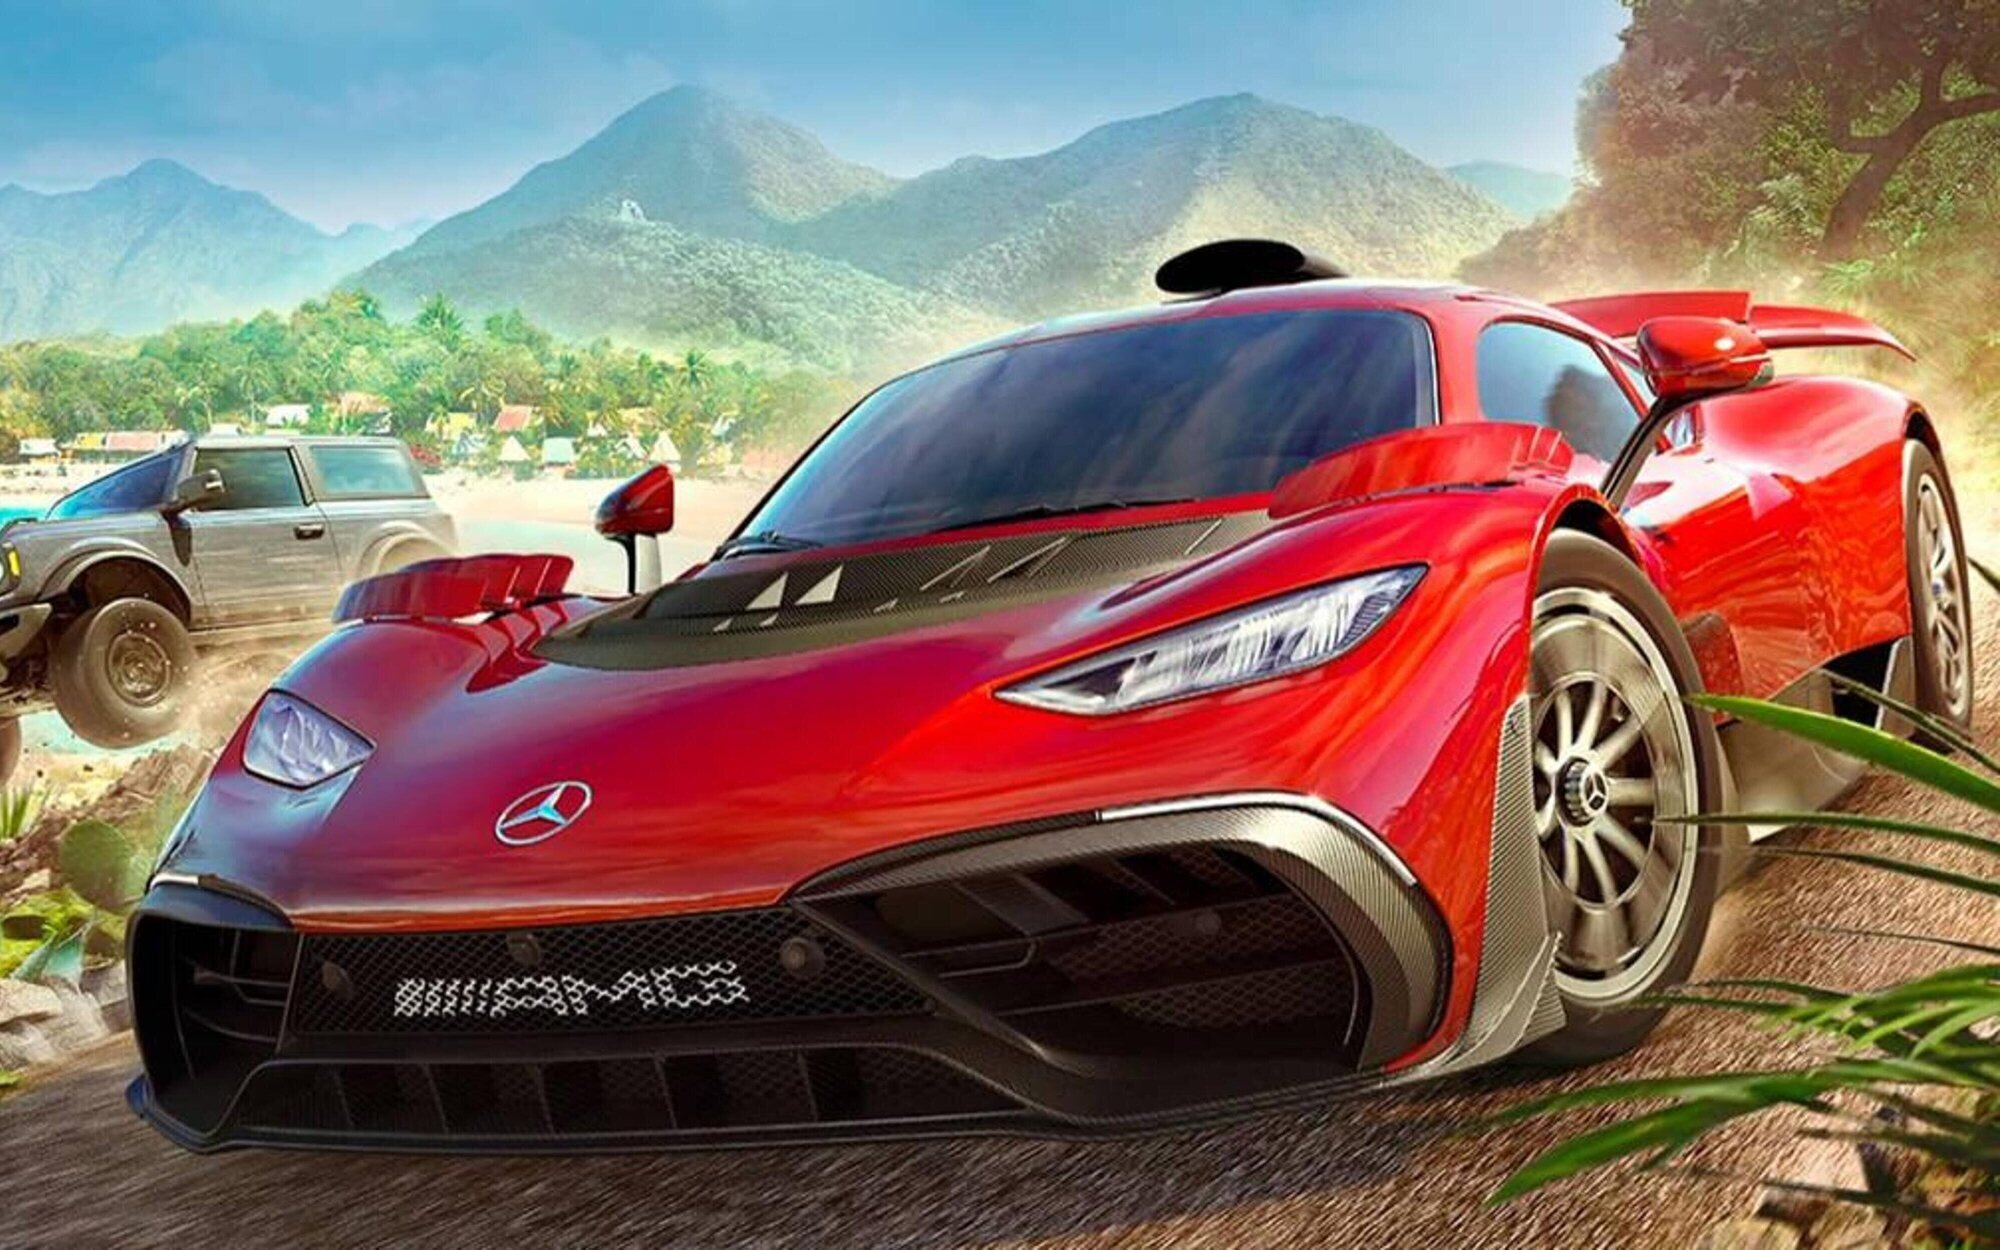 Steam filtra la primera gran expansión de 'Forza Horizon 5', con 'Hot Wheels' de protagonista